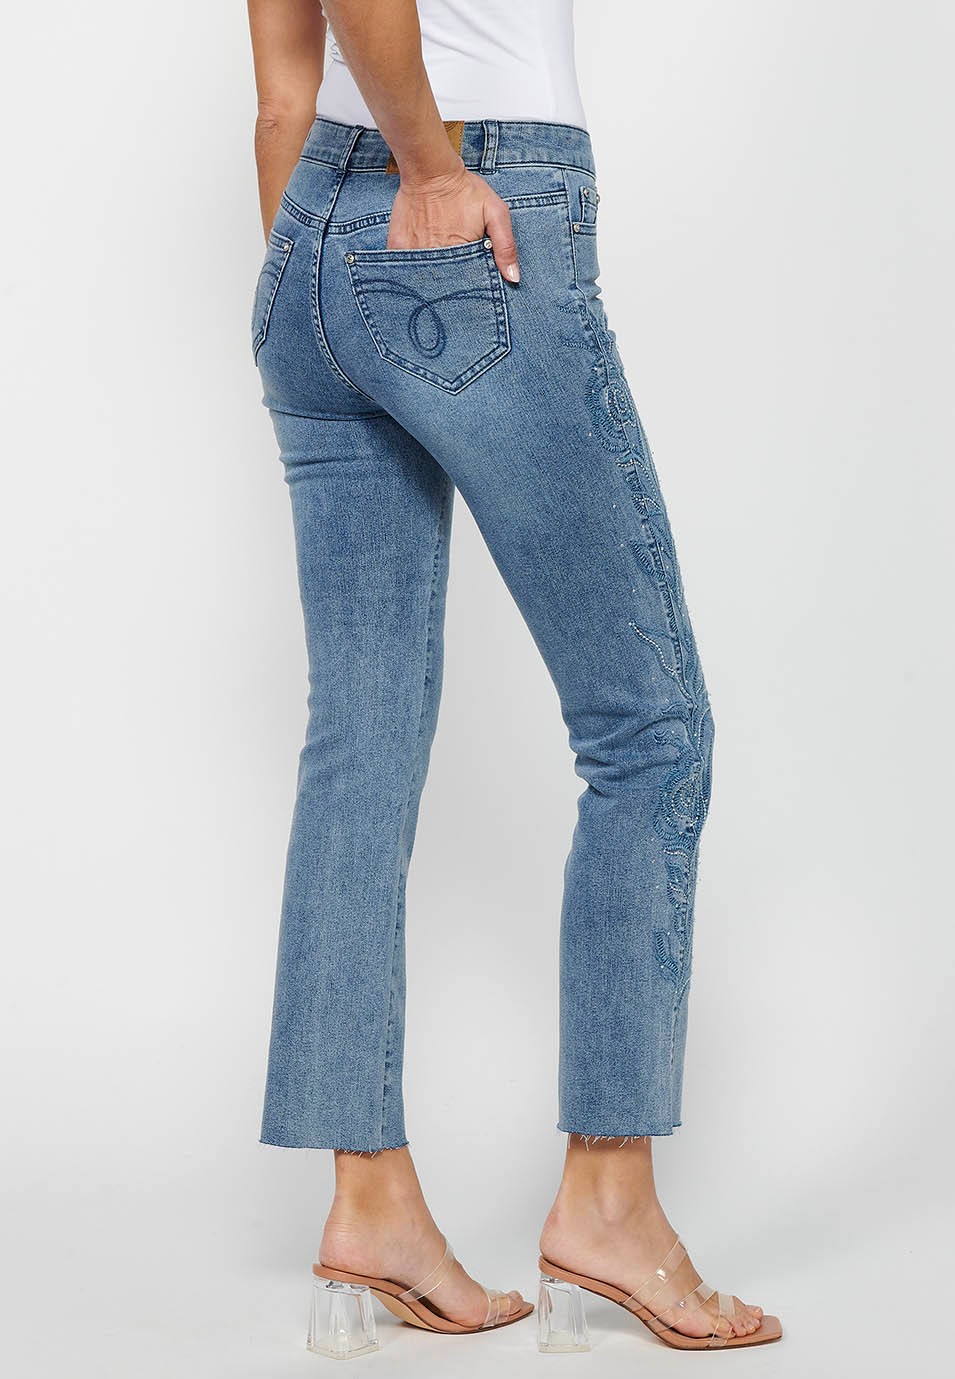 Pantalon long évasé en jean avec fermeture éclair sur le devant et détails brodés de fleurs bleu clair pour femme 6